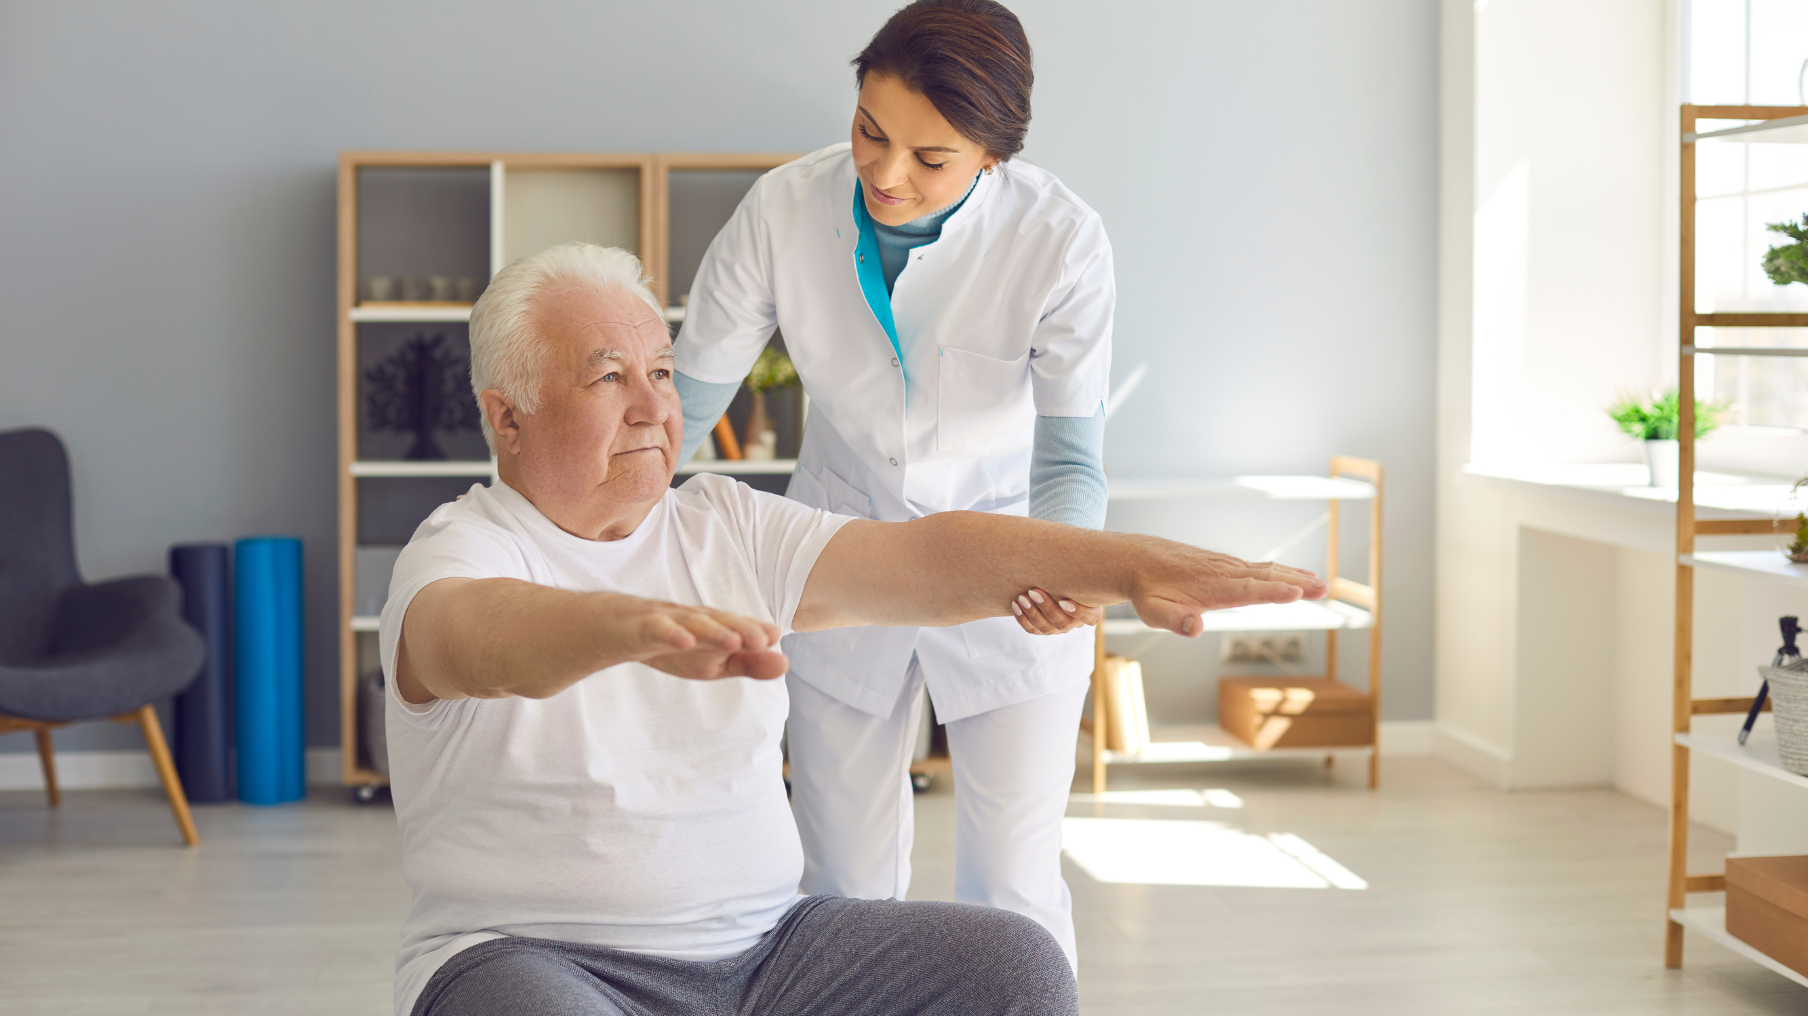 Una fisioterapeuta atiende a una persona mayor en su consulta